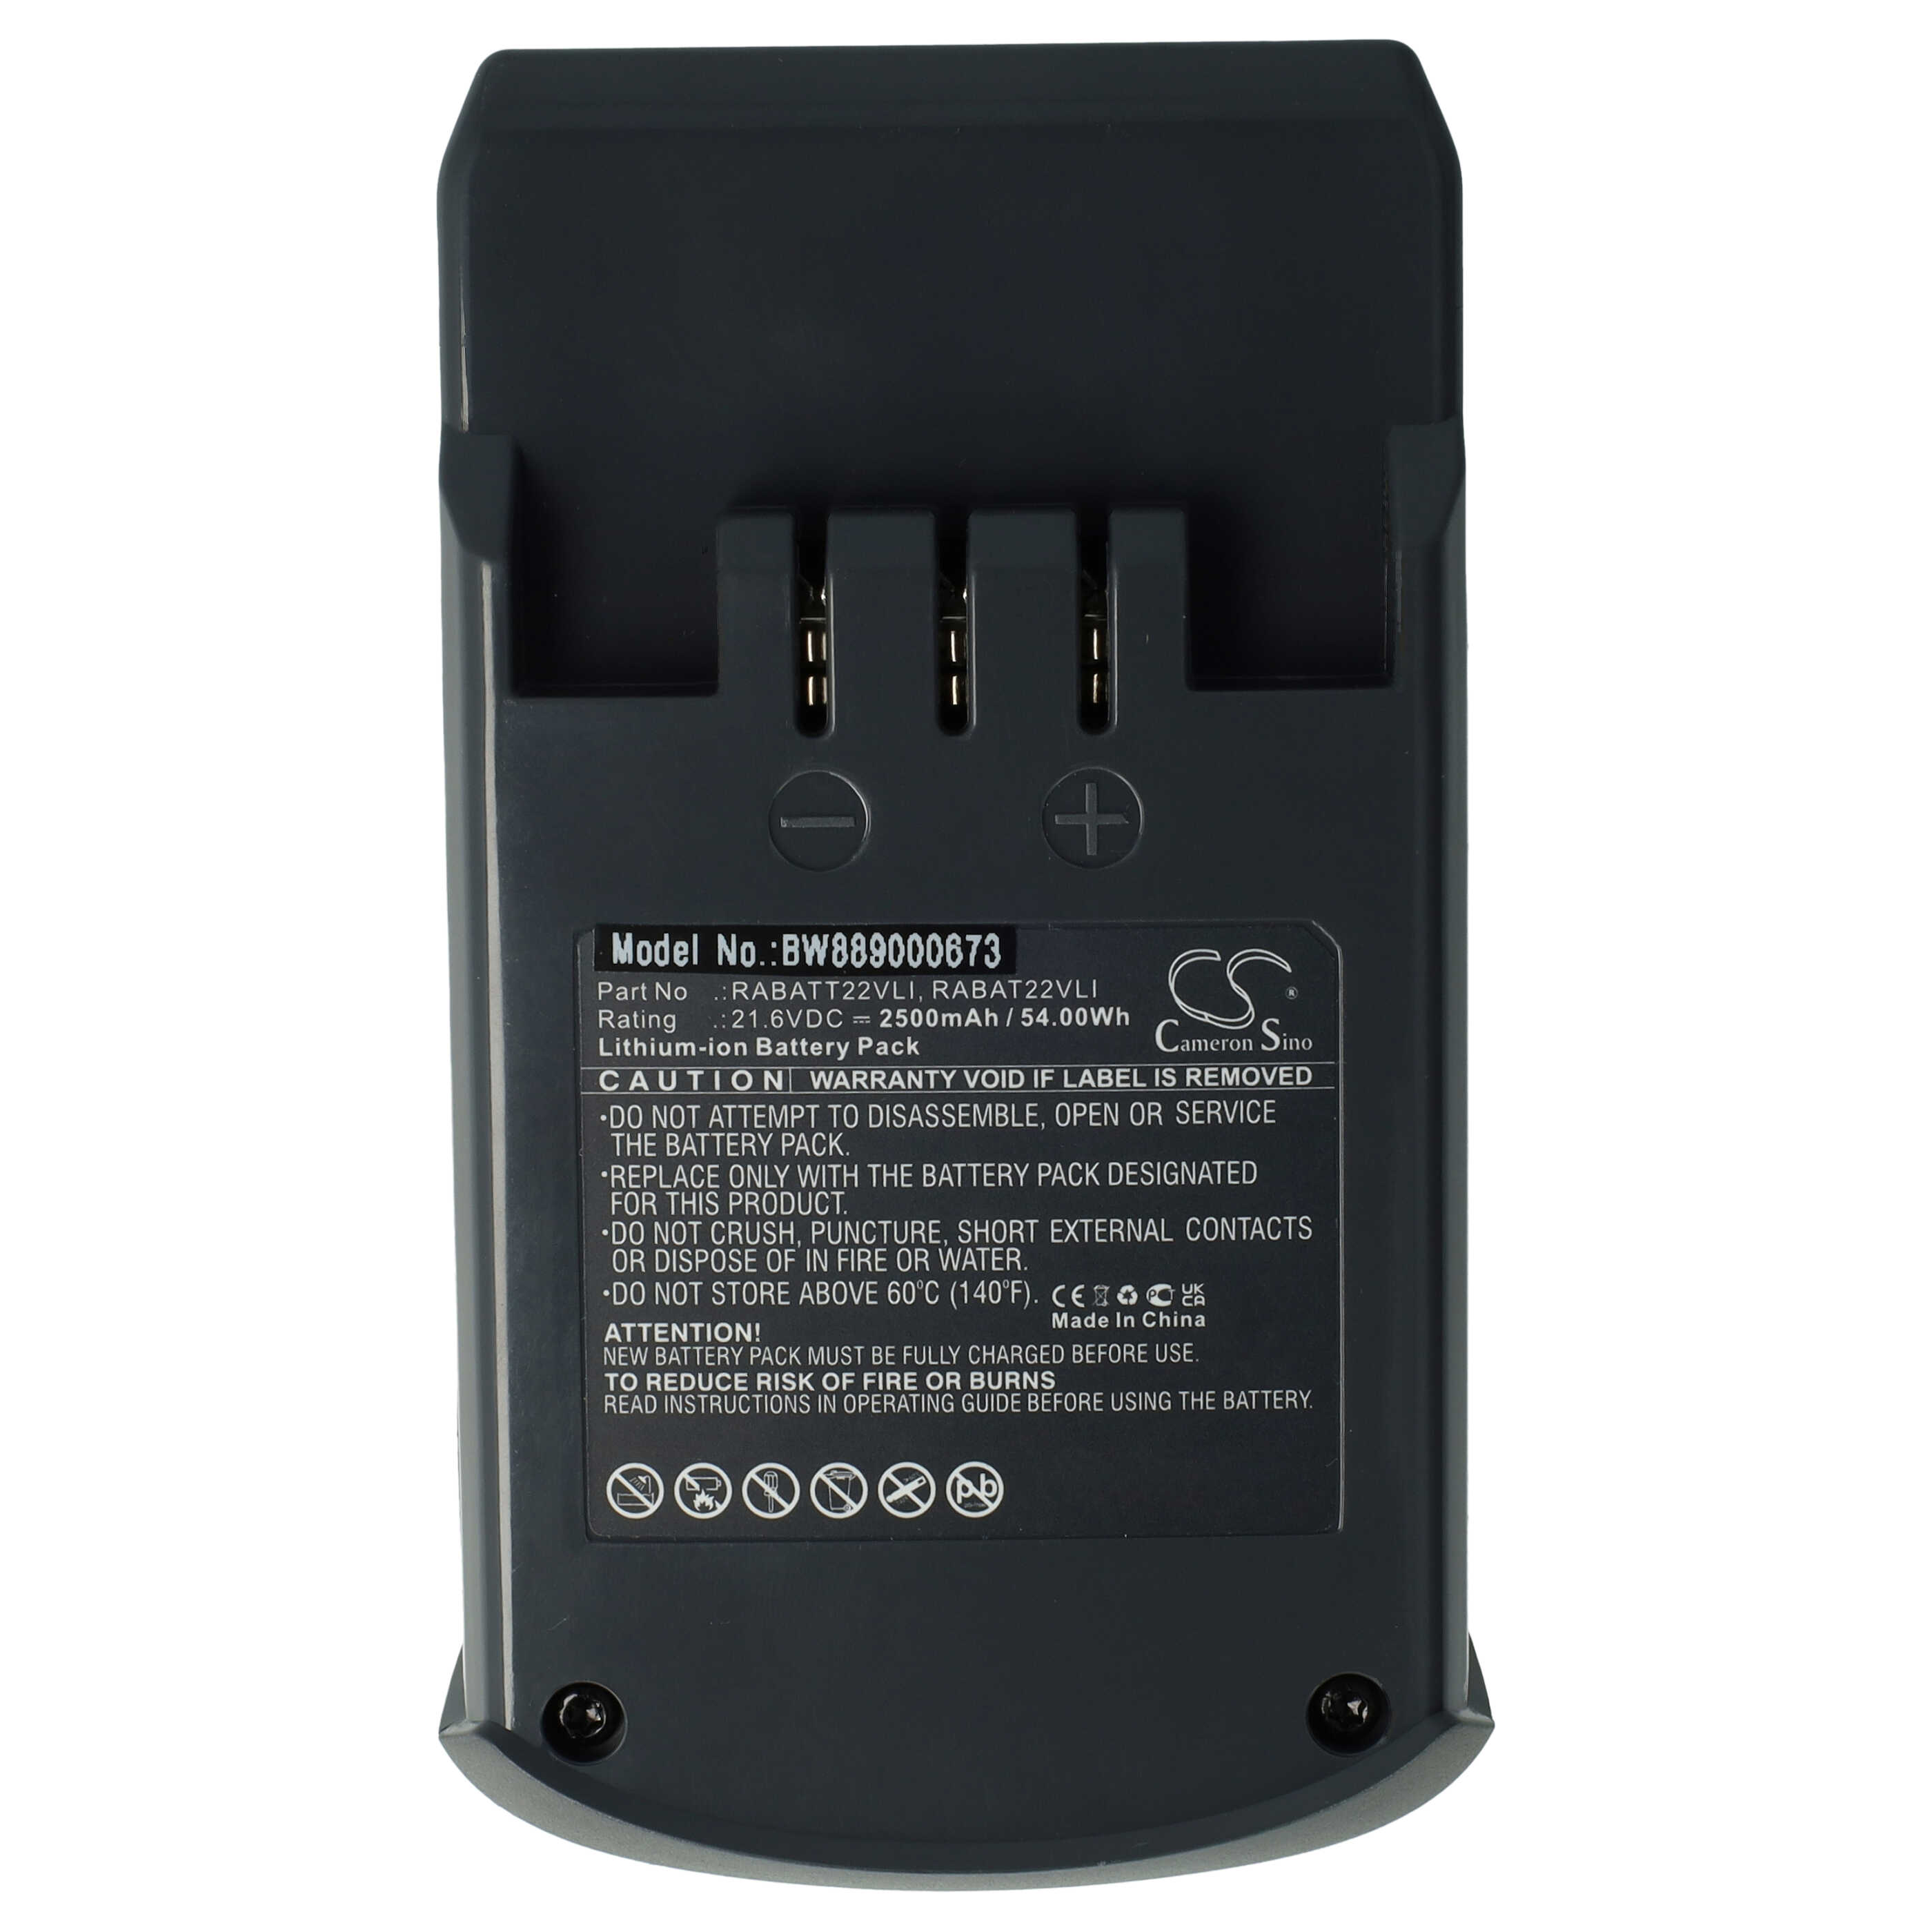 Batterie remplace Hoover RABAT22VLI, 6.20.40.01-0, 48023809 pour aspirateur - 2500mAh 21,6V Li-ion